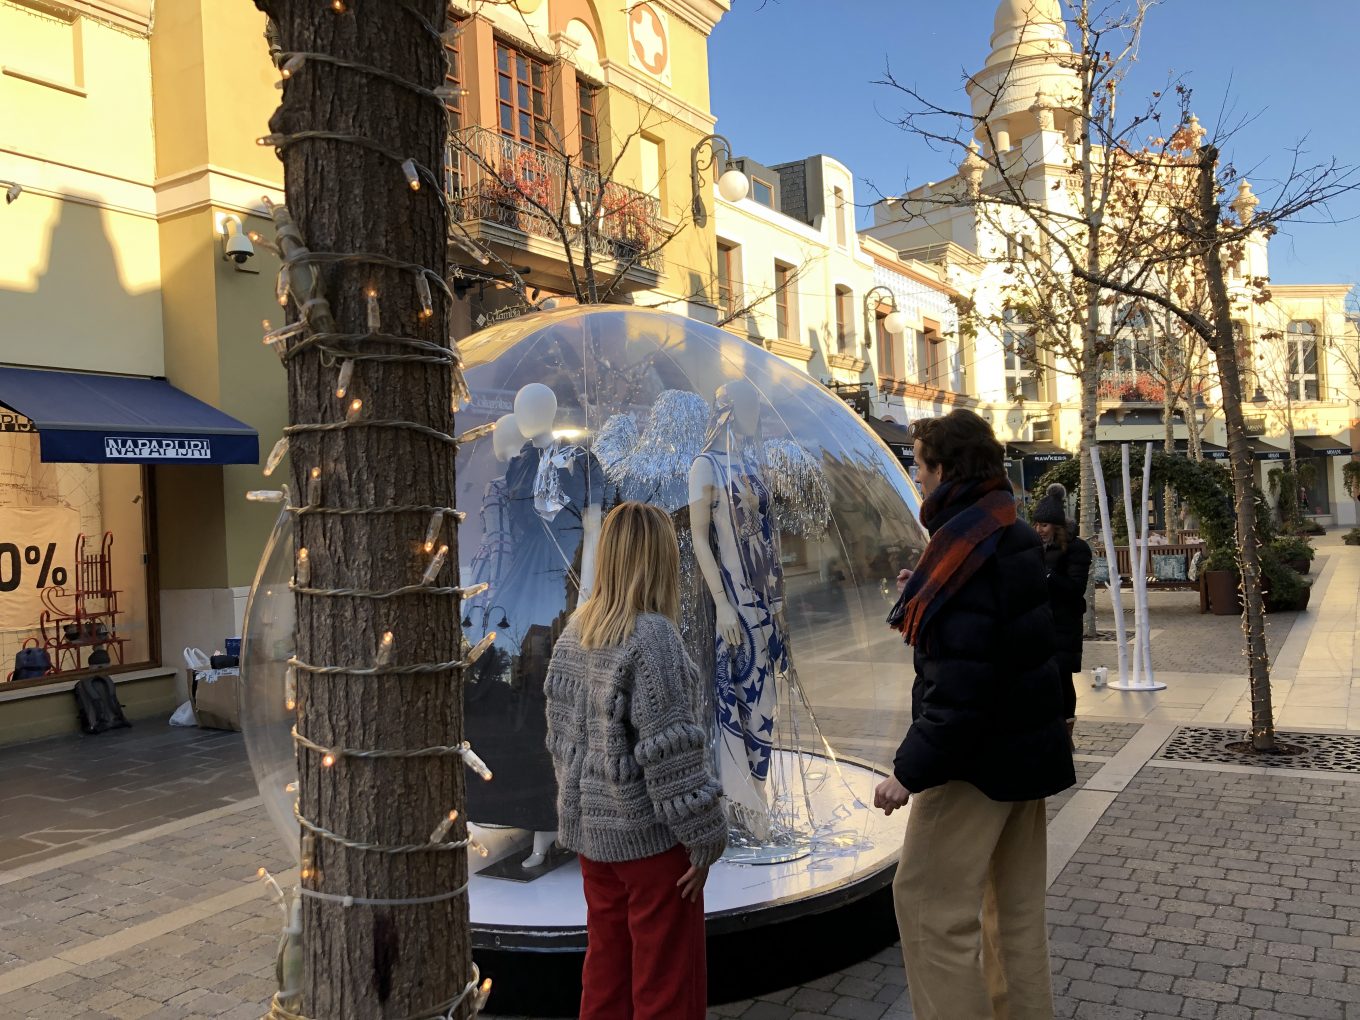 Peatones observan globo de cristal con maniquíes en su interior